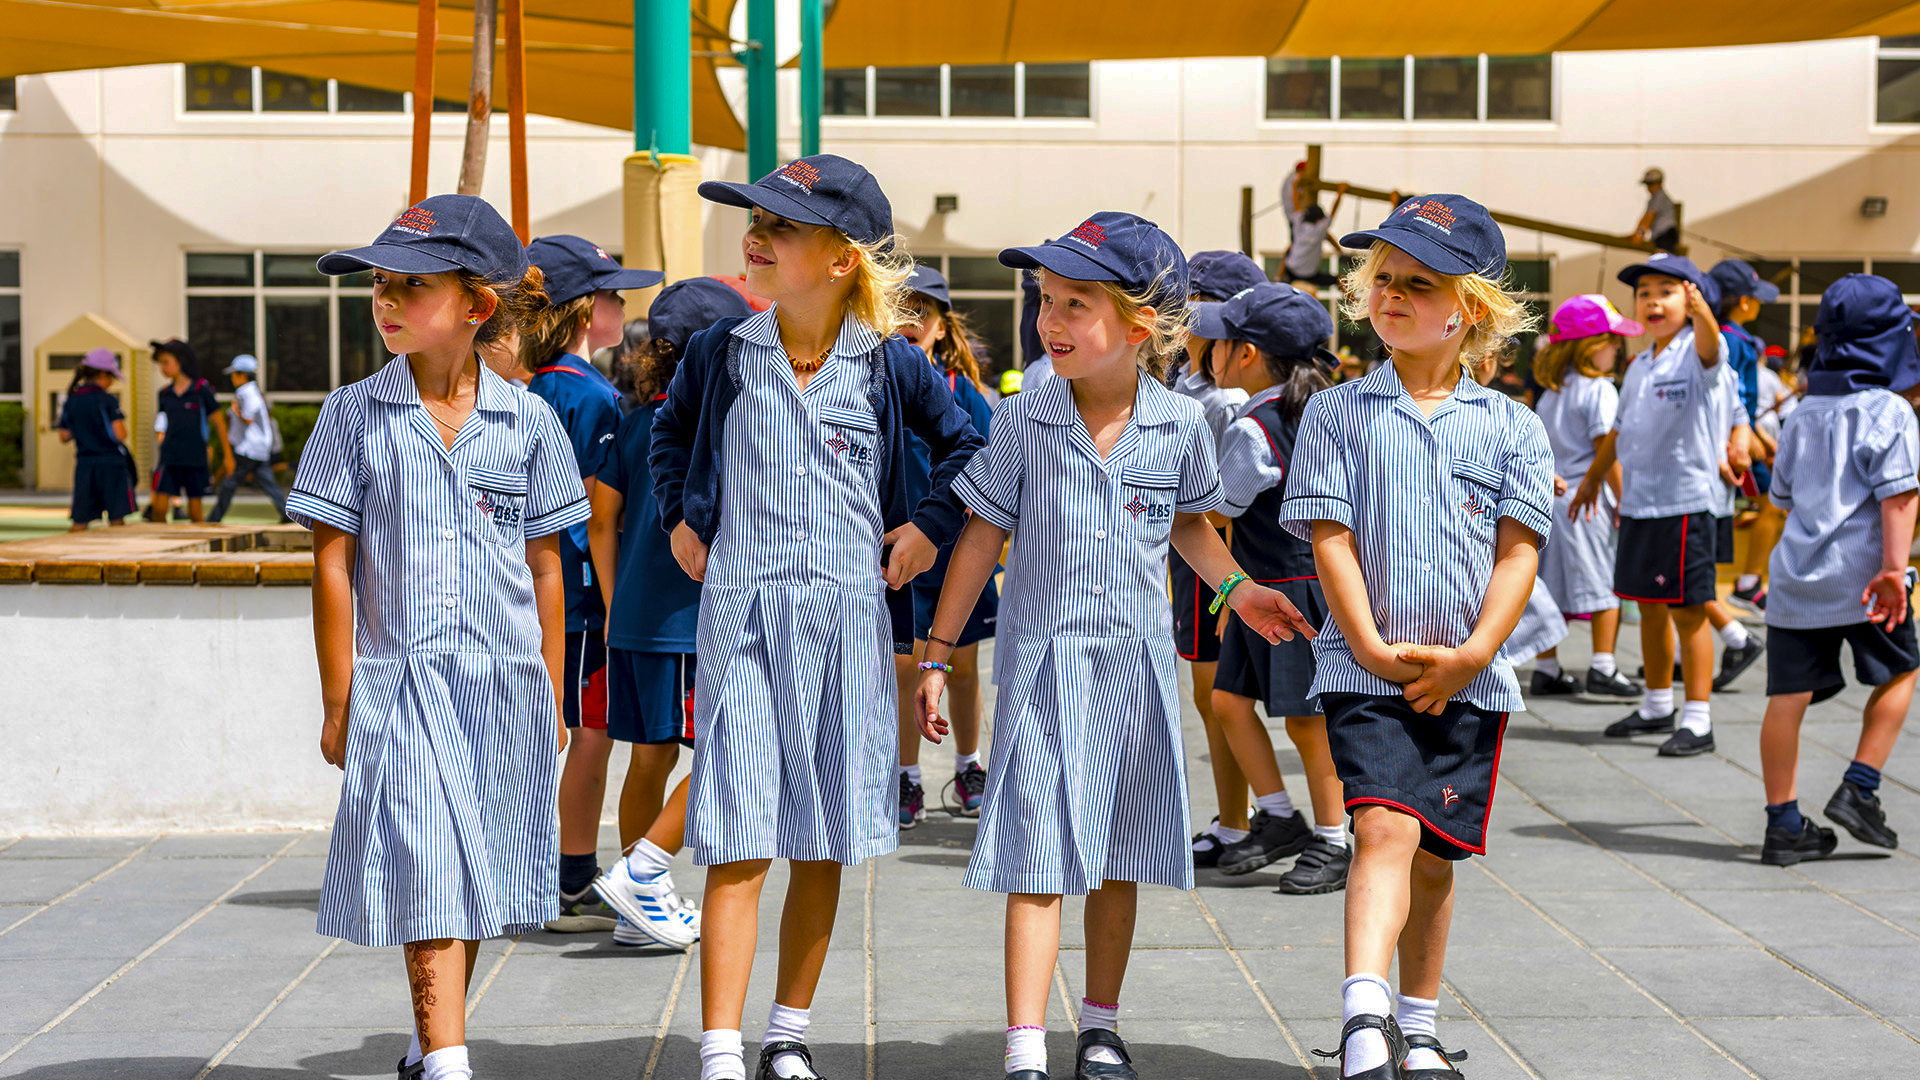 مدرسة جميرا البريطانية الجديدة في دبي قادمة في عام 2024 - أكدتها تعليم في موقع رئيسي بجوار مدرسة هورايزون الإنجليزية